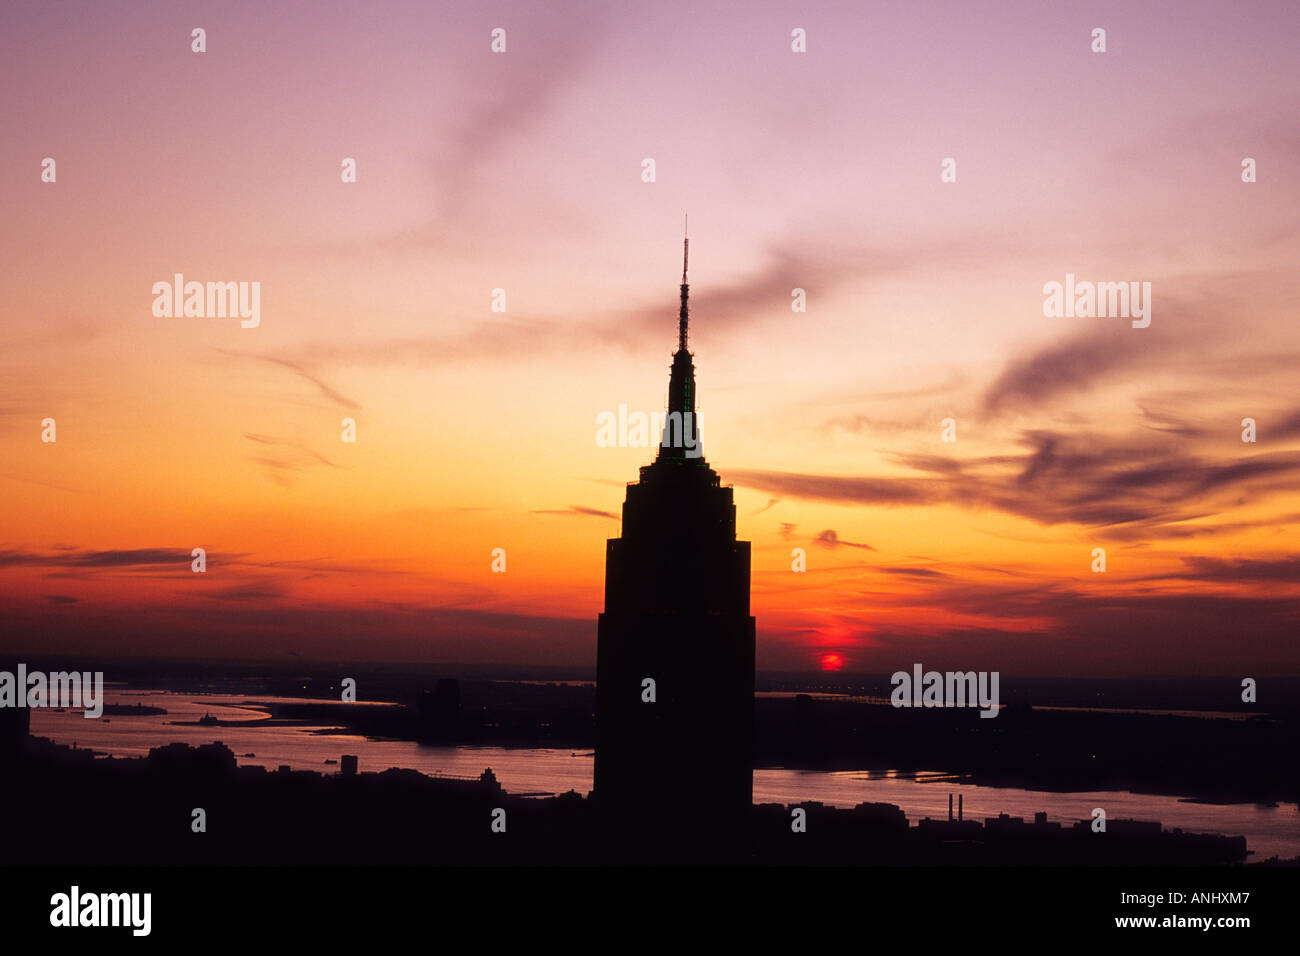 L'Empire State Building, une tour de gratte-ciel art déco dans le quartier Midtown de New York City, a été taillé par un coucher de soleil sur les gratte-ciel.Vue aérienne. Banque D'Images